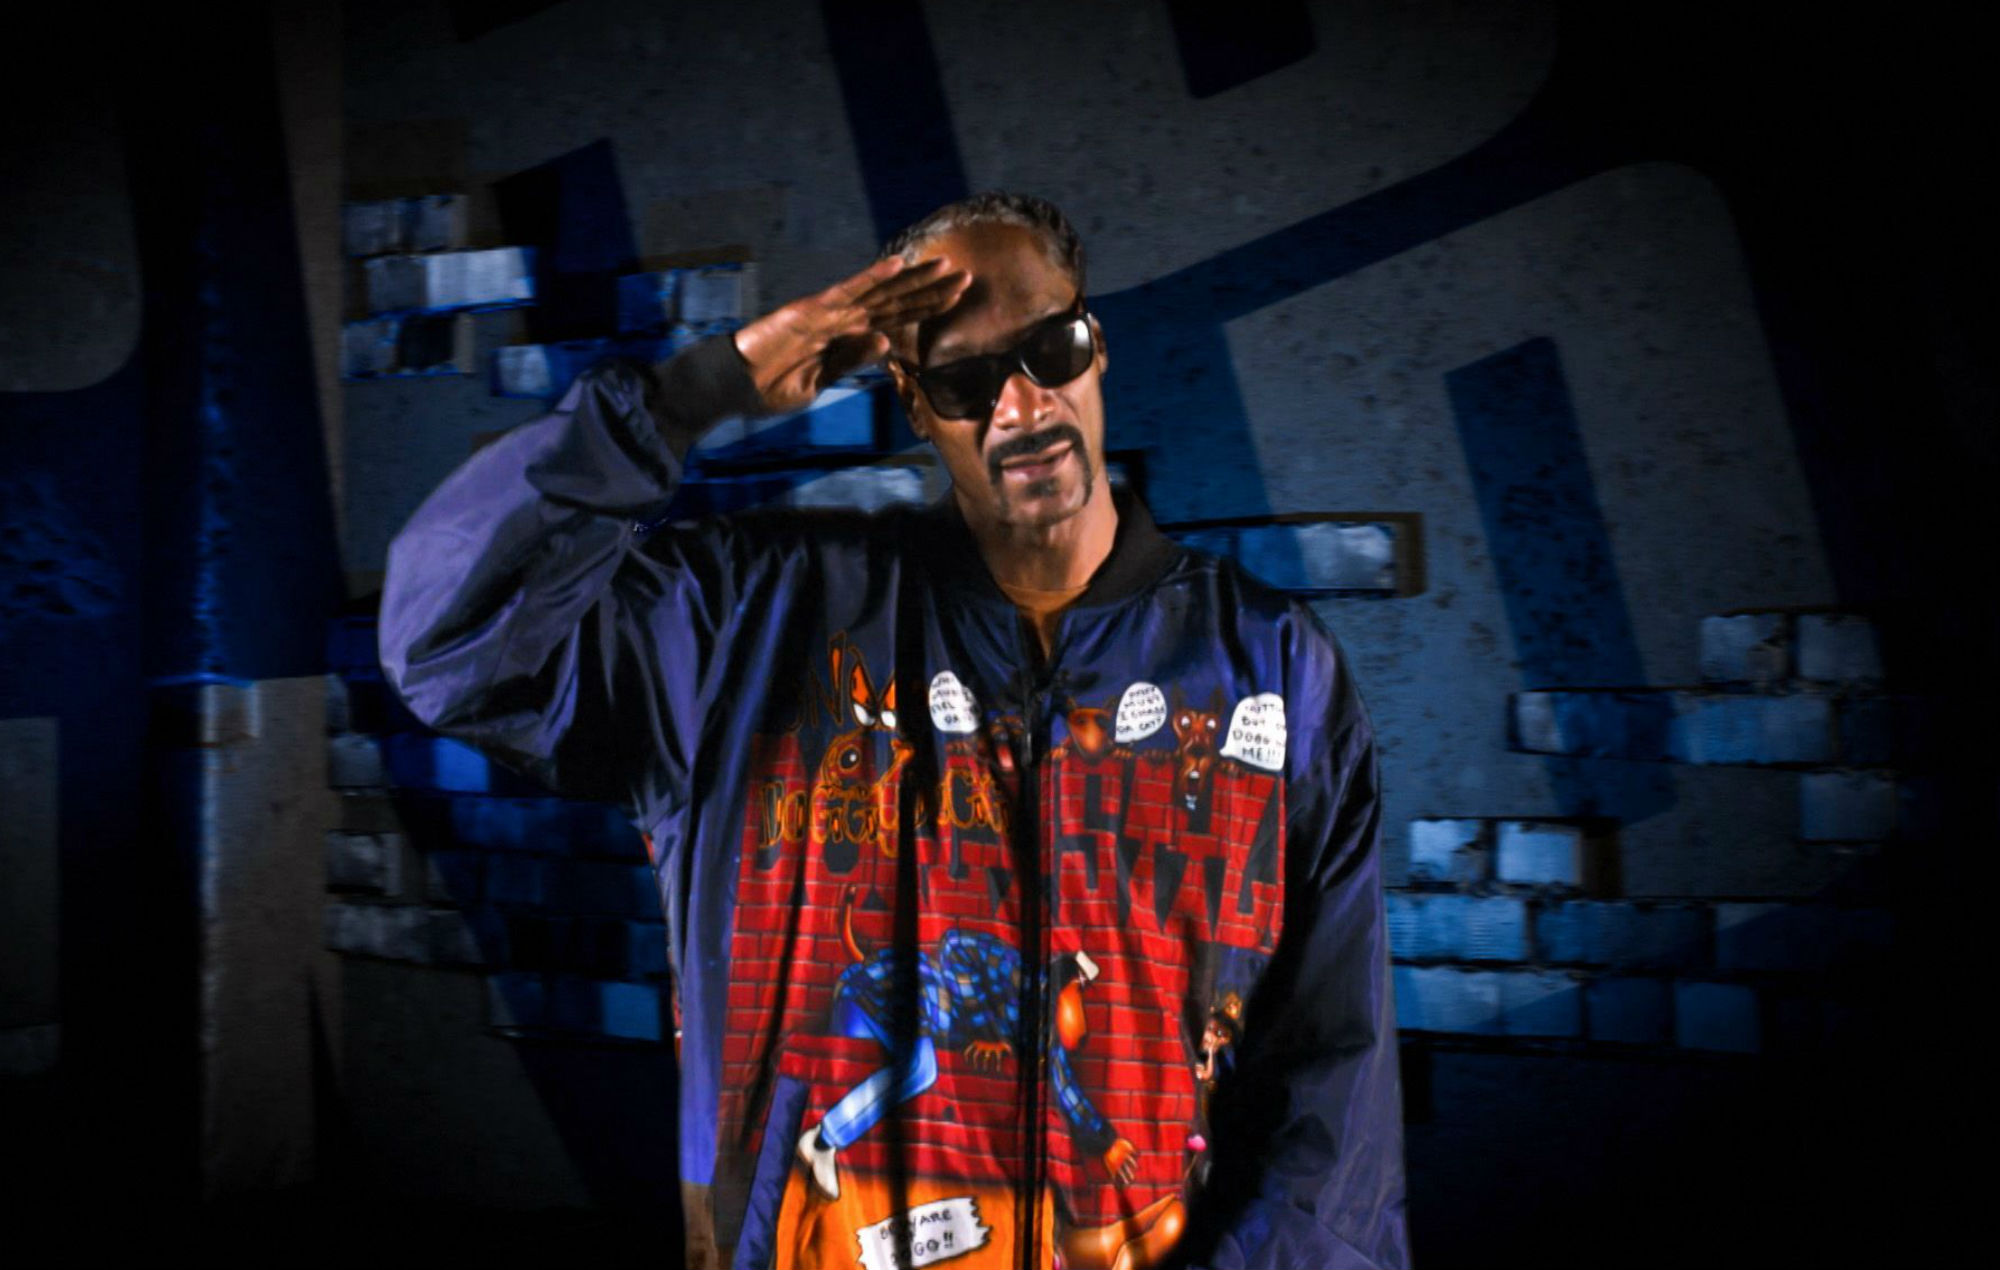 ¿Quieres aparecer en una pista de Snoop Dogg? Esta es tu oportunidad